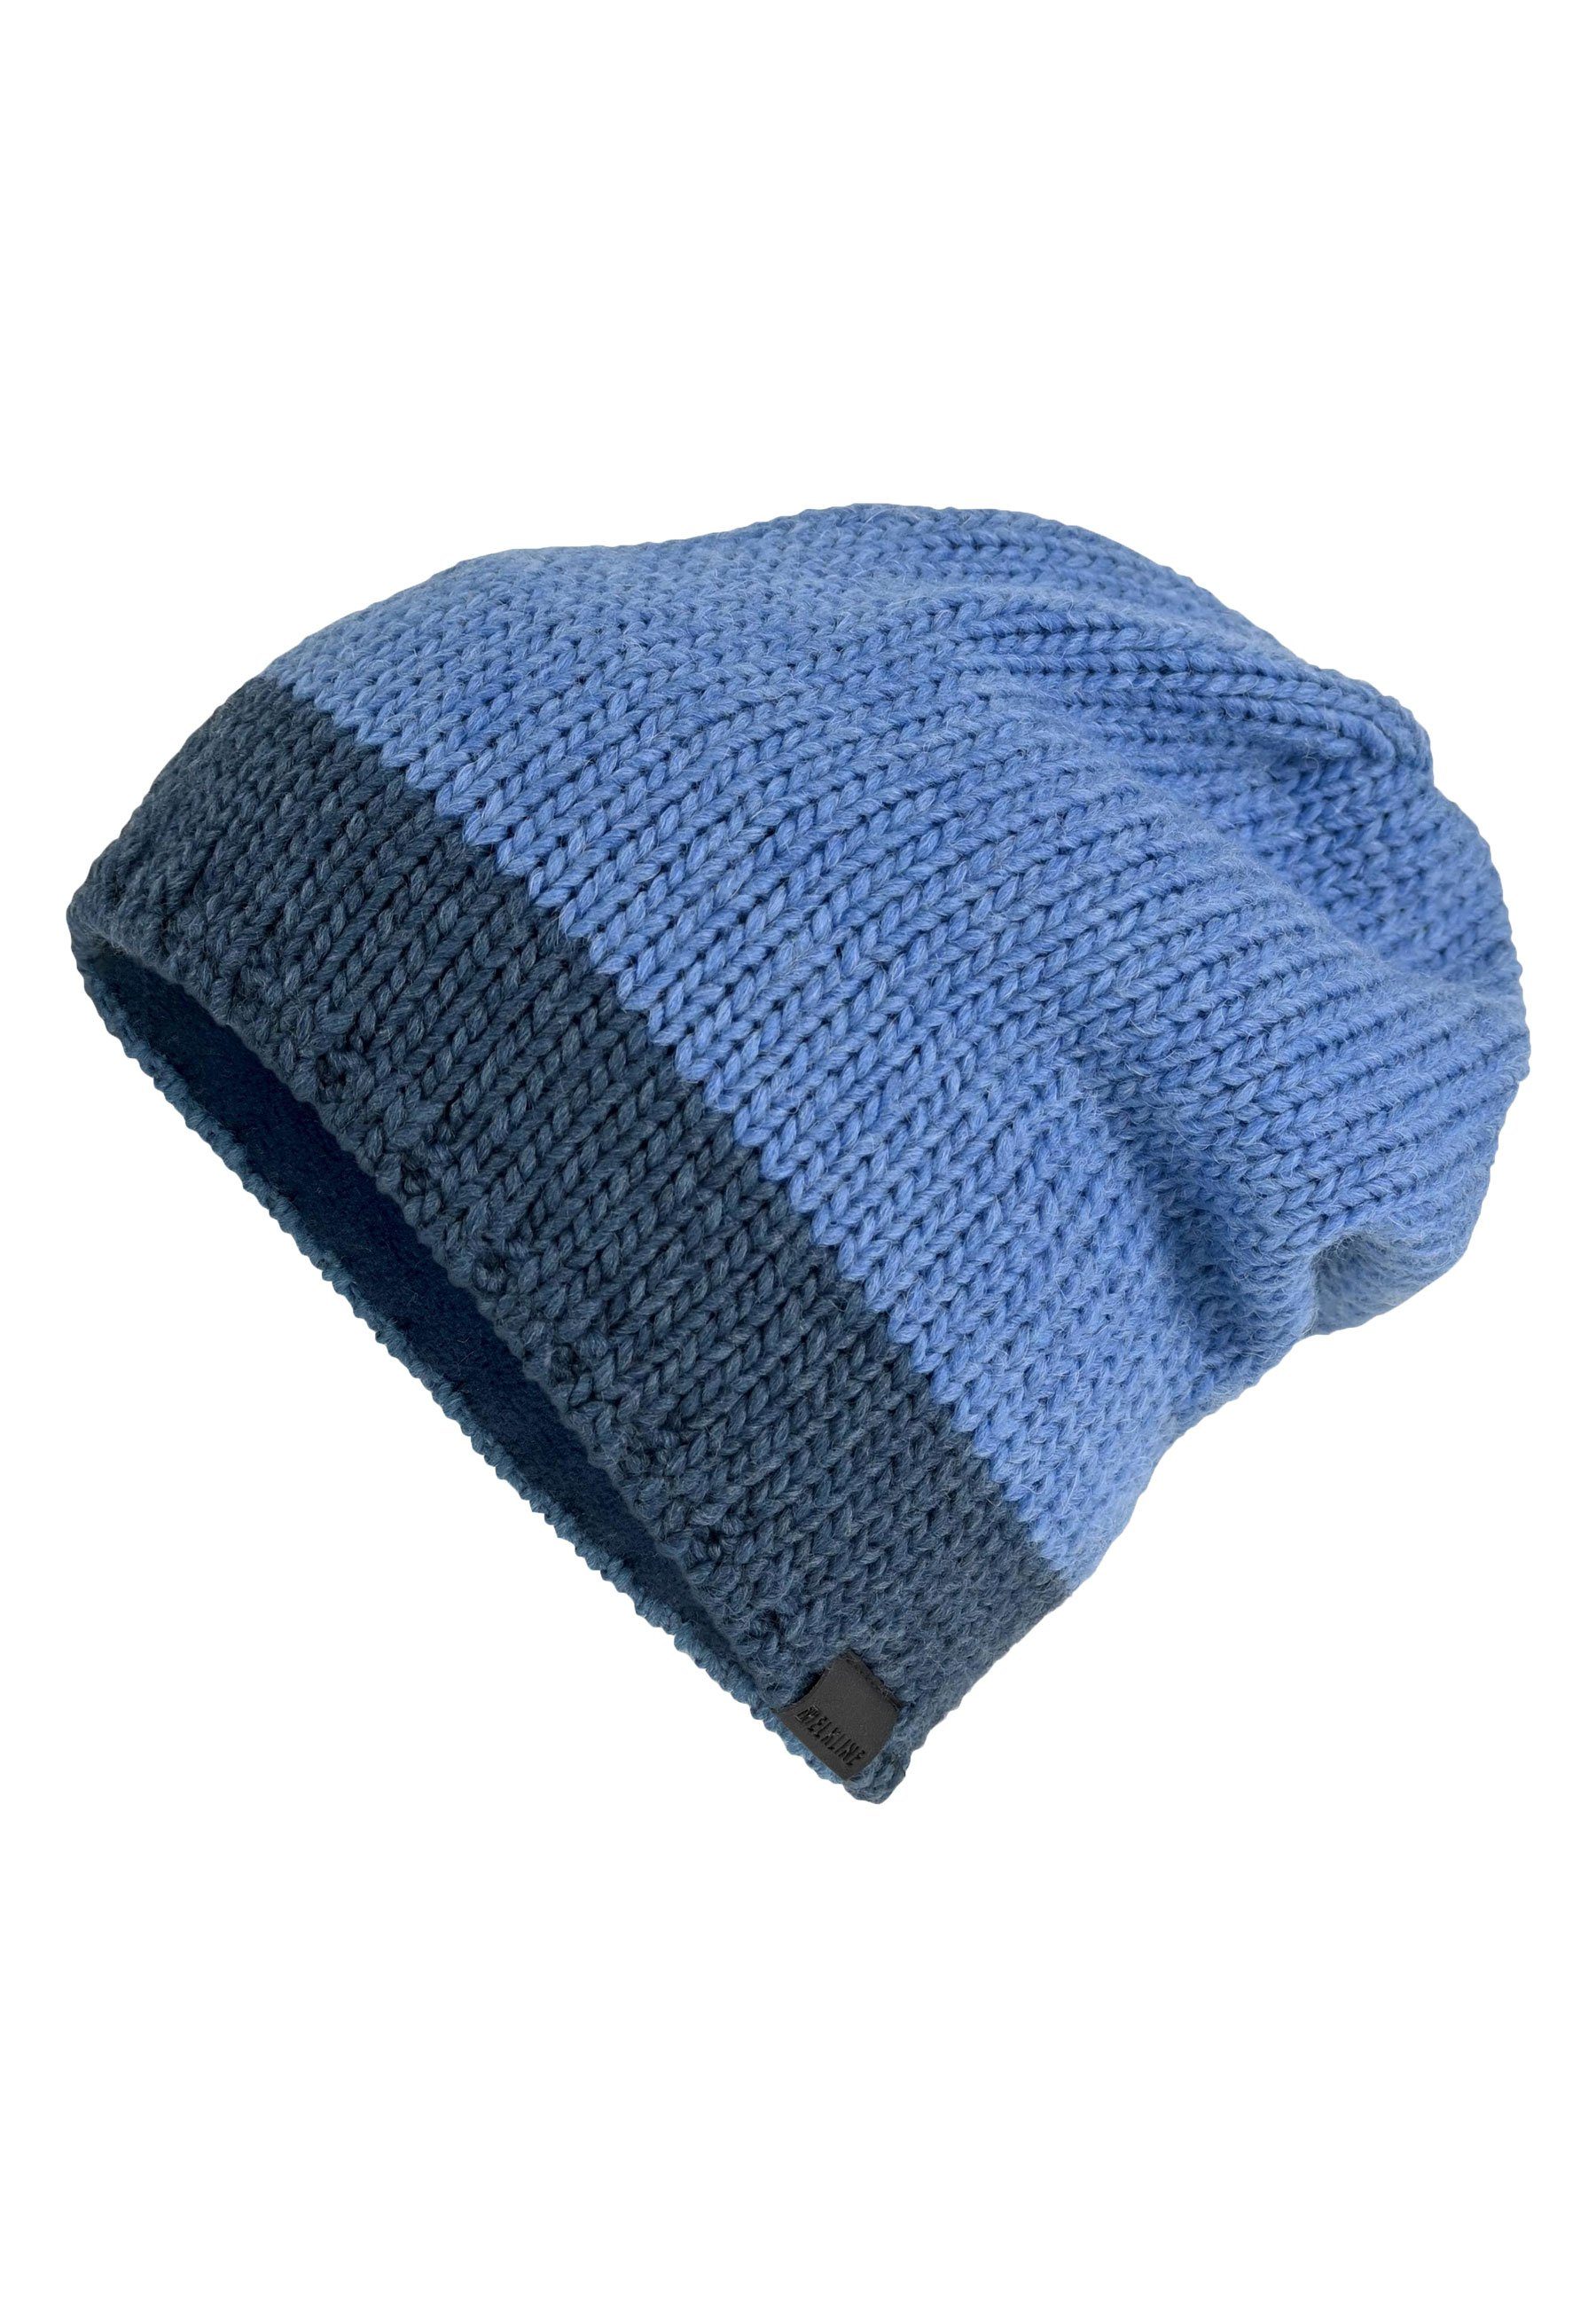 Elkline Strickmütze Hat Innenfleece denim blue Up - warmes